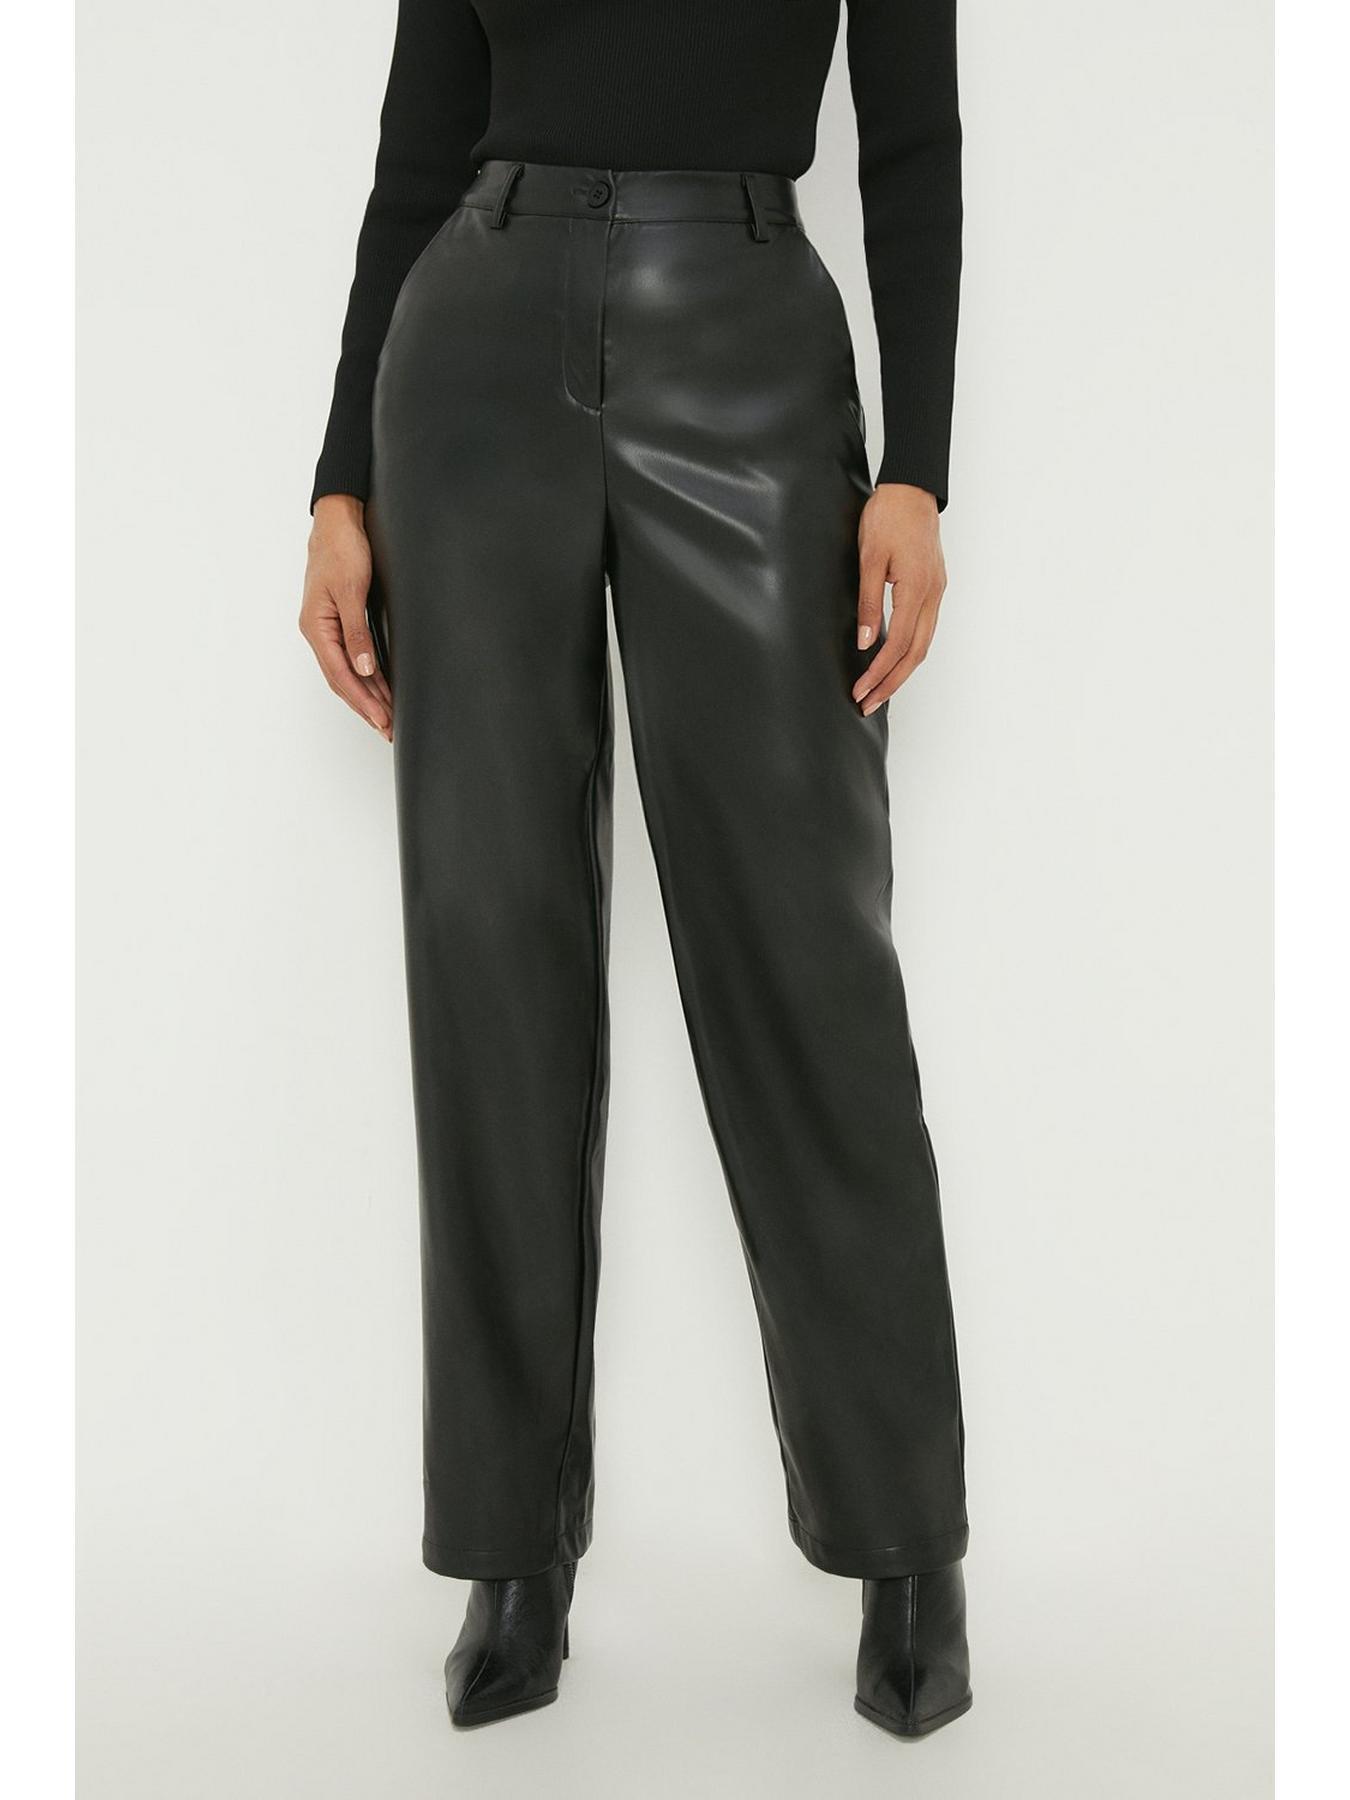 SOSANDAR Black Button Front Faux Leather Trousers RRP £175 size UK